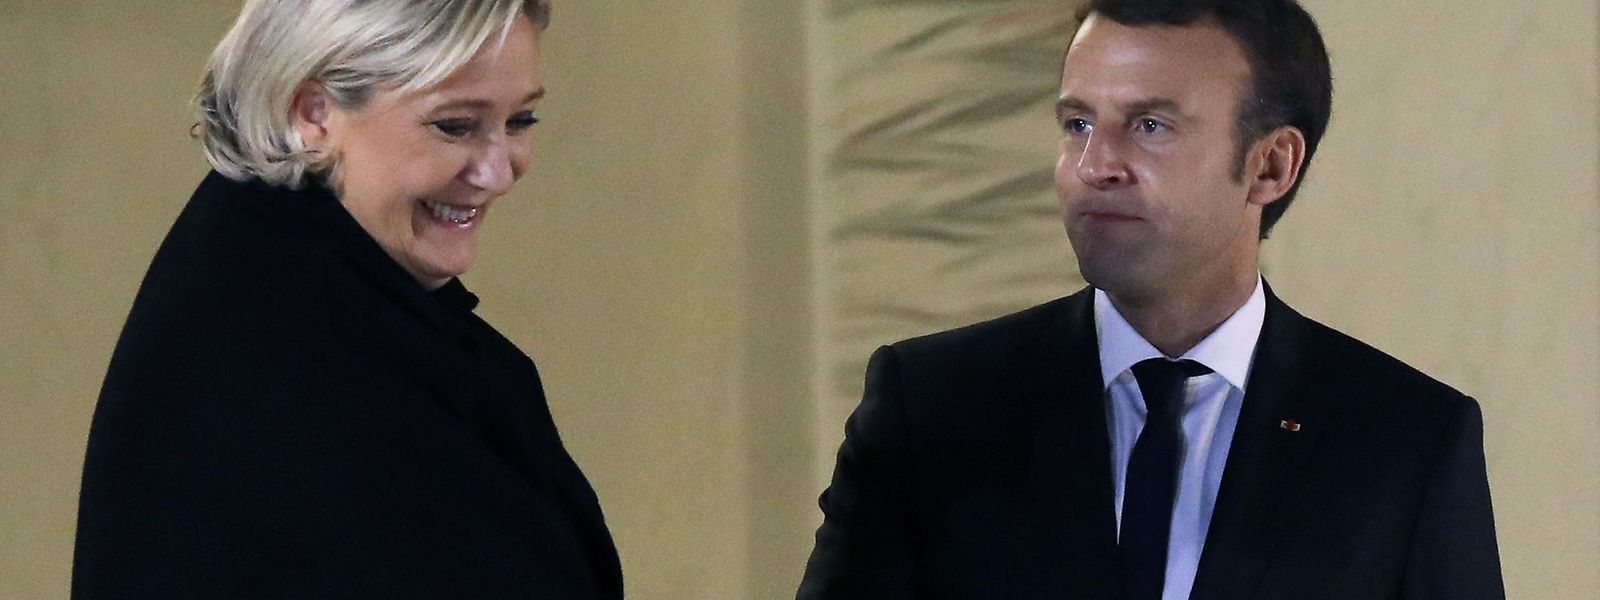 Le duel s'annonce serré entre Marine Le Pen et Emmanuel Macron.